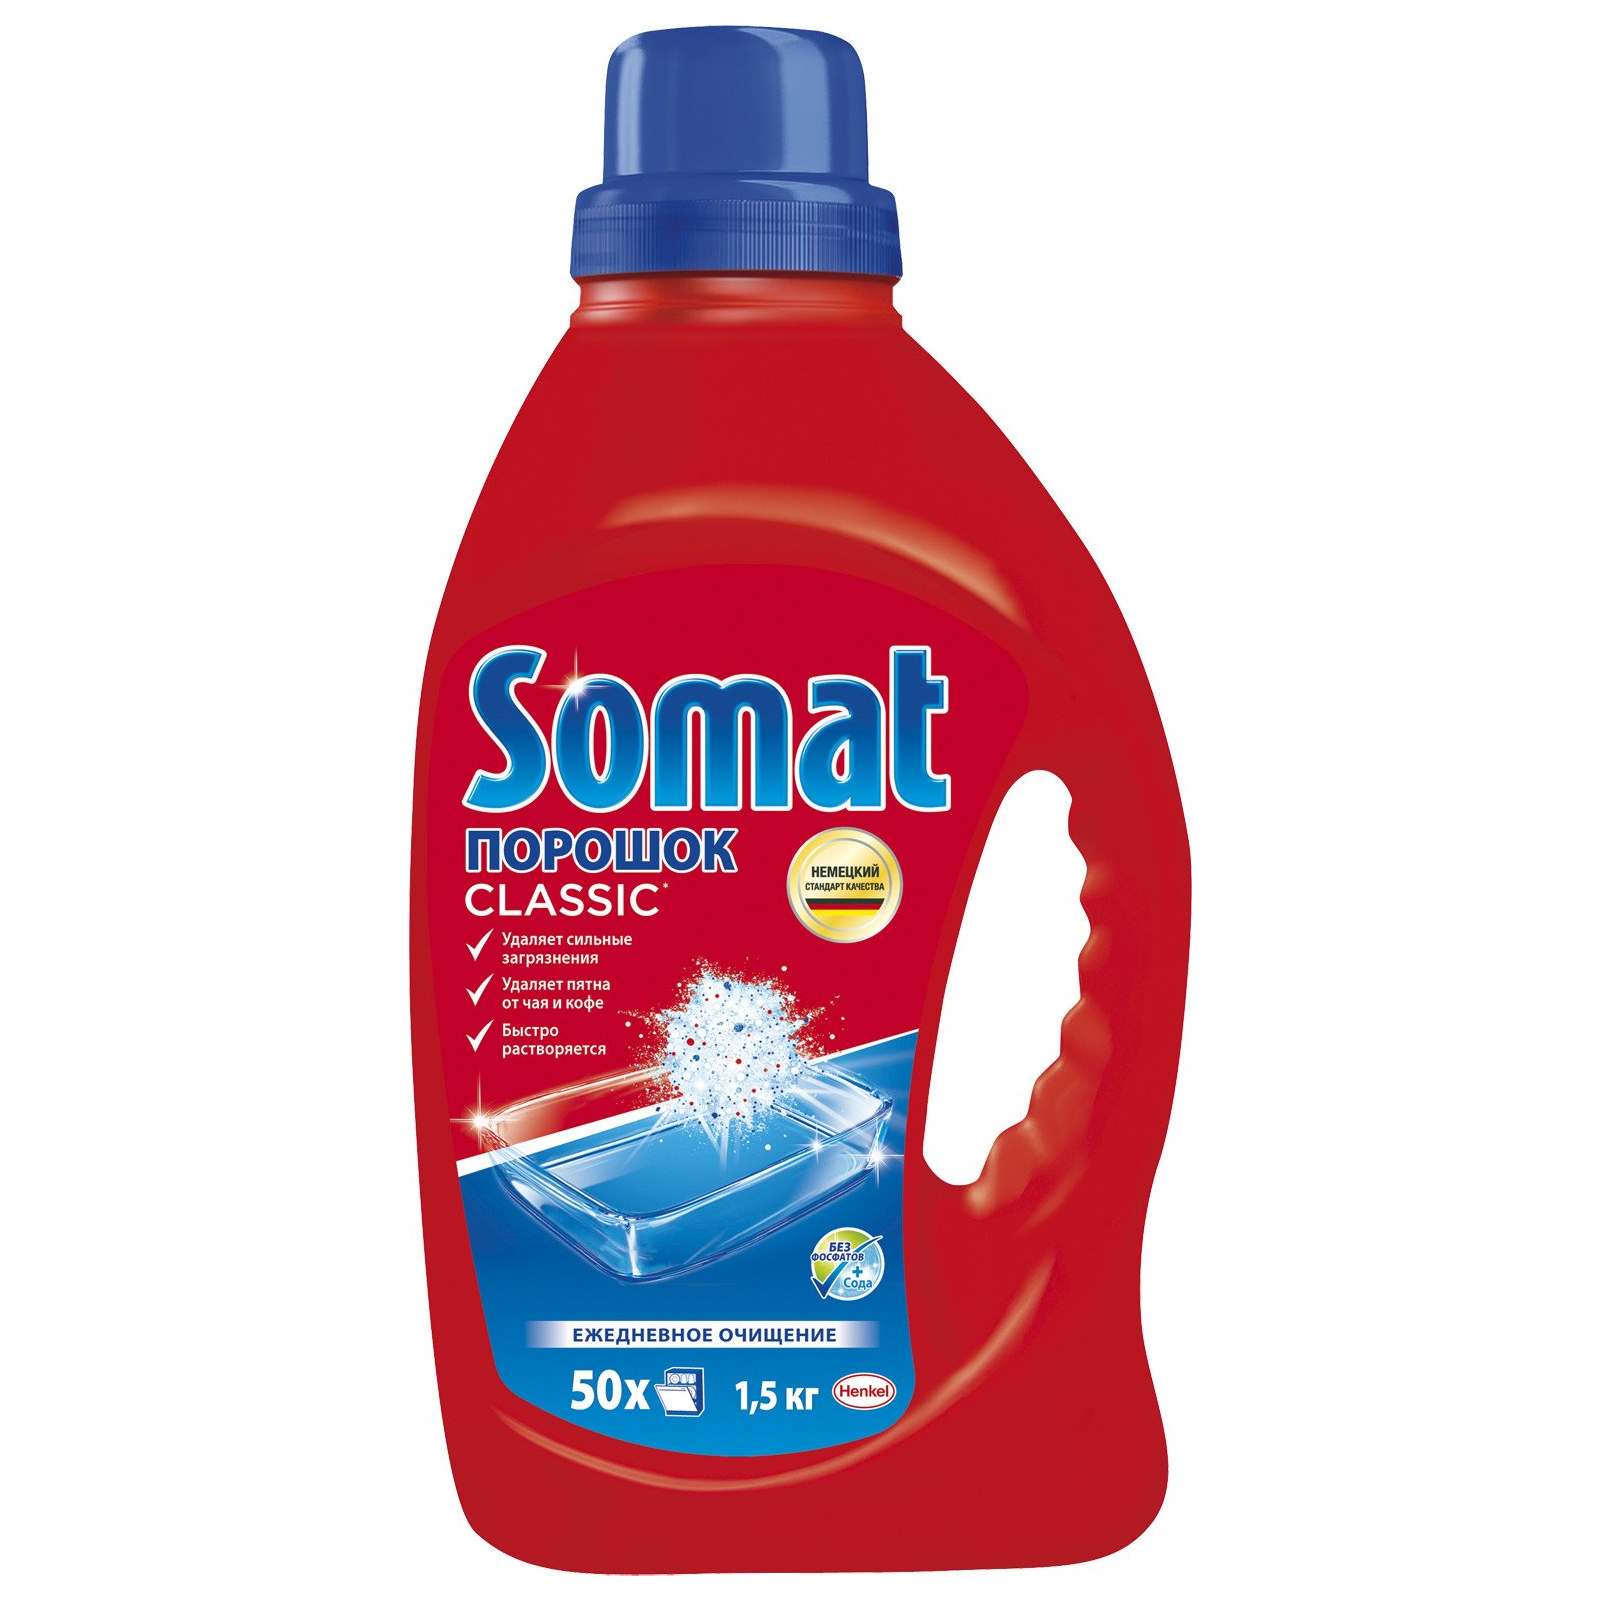 Порошок для мытья посуды в посудомойке Somat порошок Classic 1.5 кг (9000101400465)